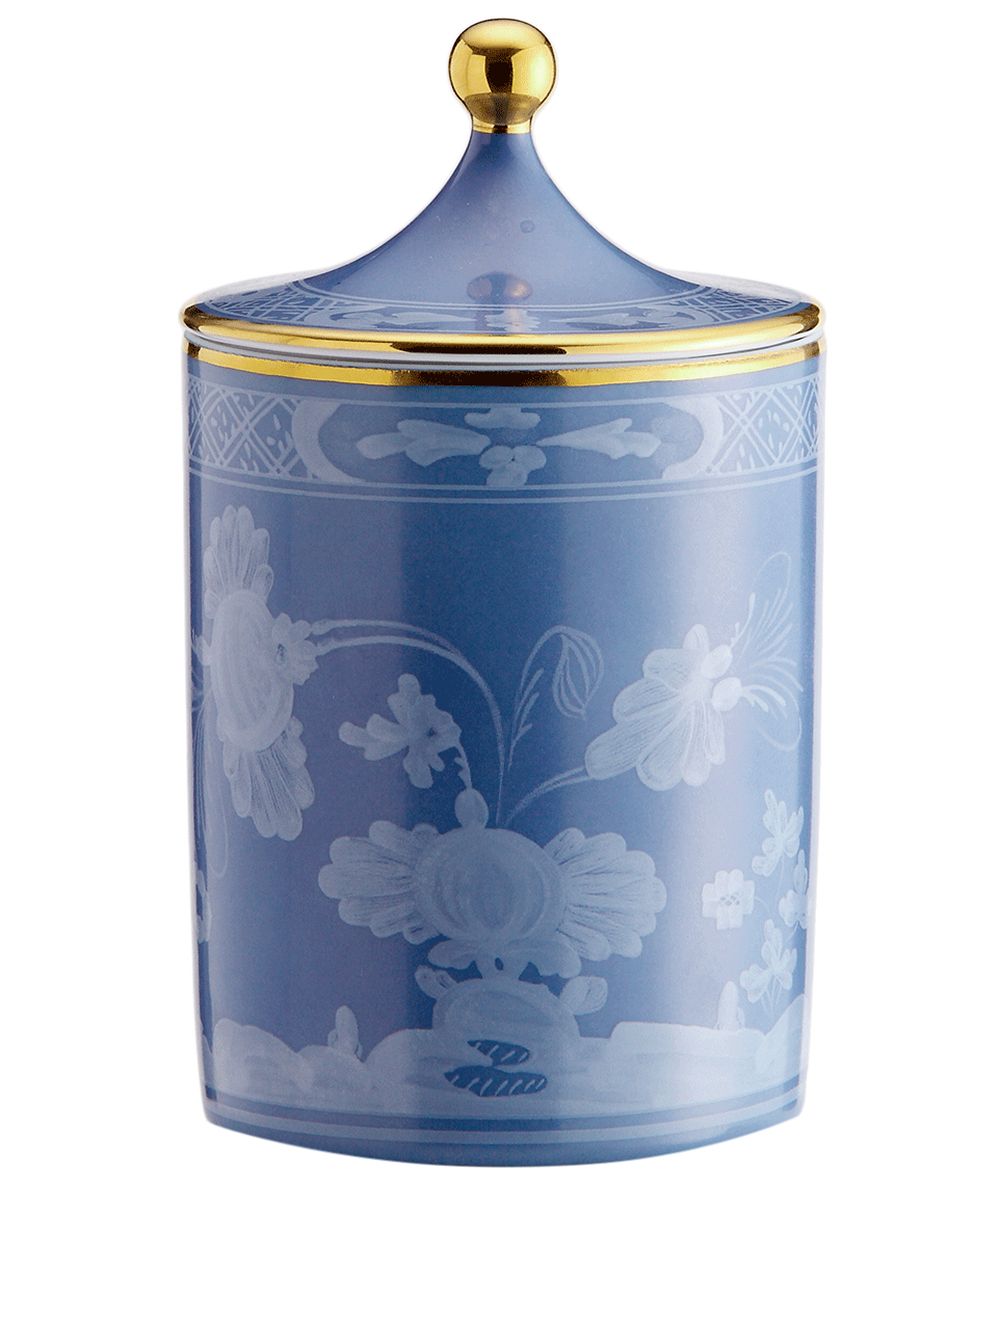 GINORI 1735 Oriente Italiano scented candle (300g) - Blue von GINORI 1735